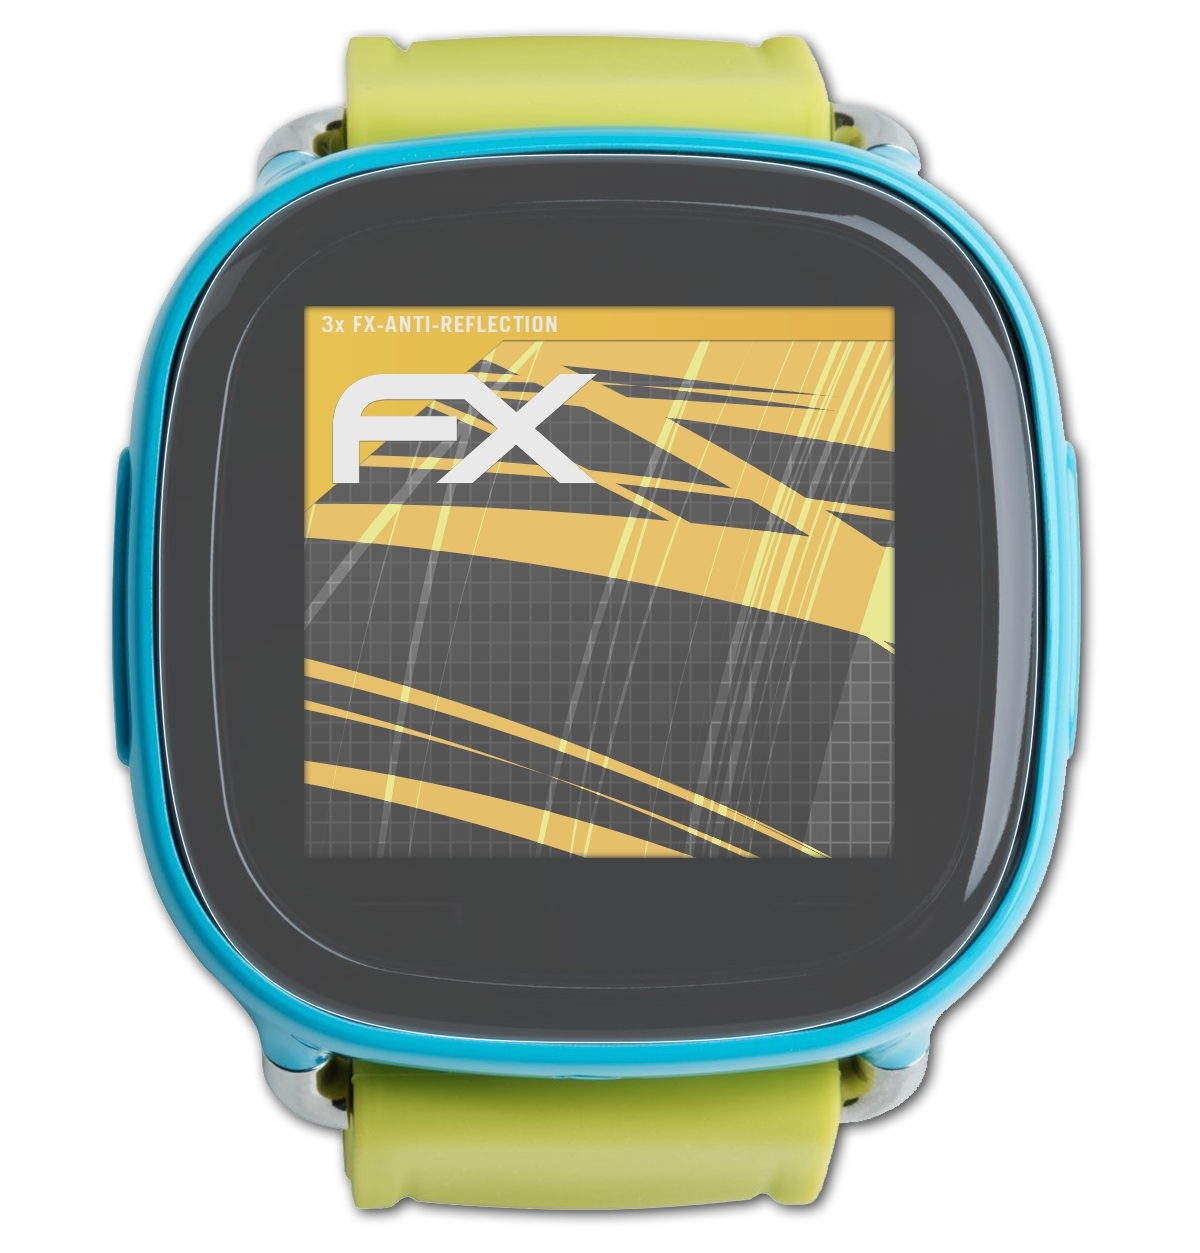 ATFOLIX 3x FX-Antireflex Displayschutz(für Kids) XPlora